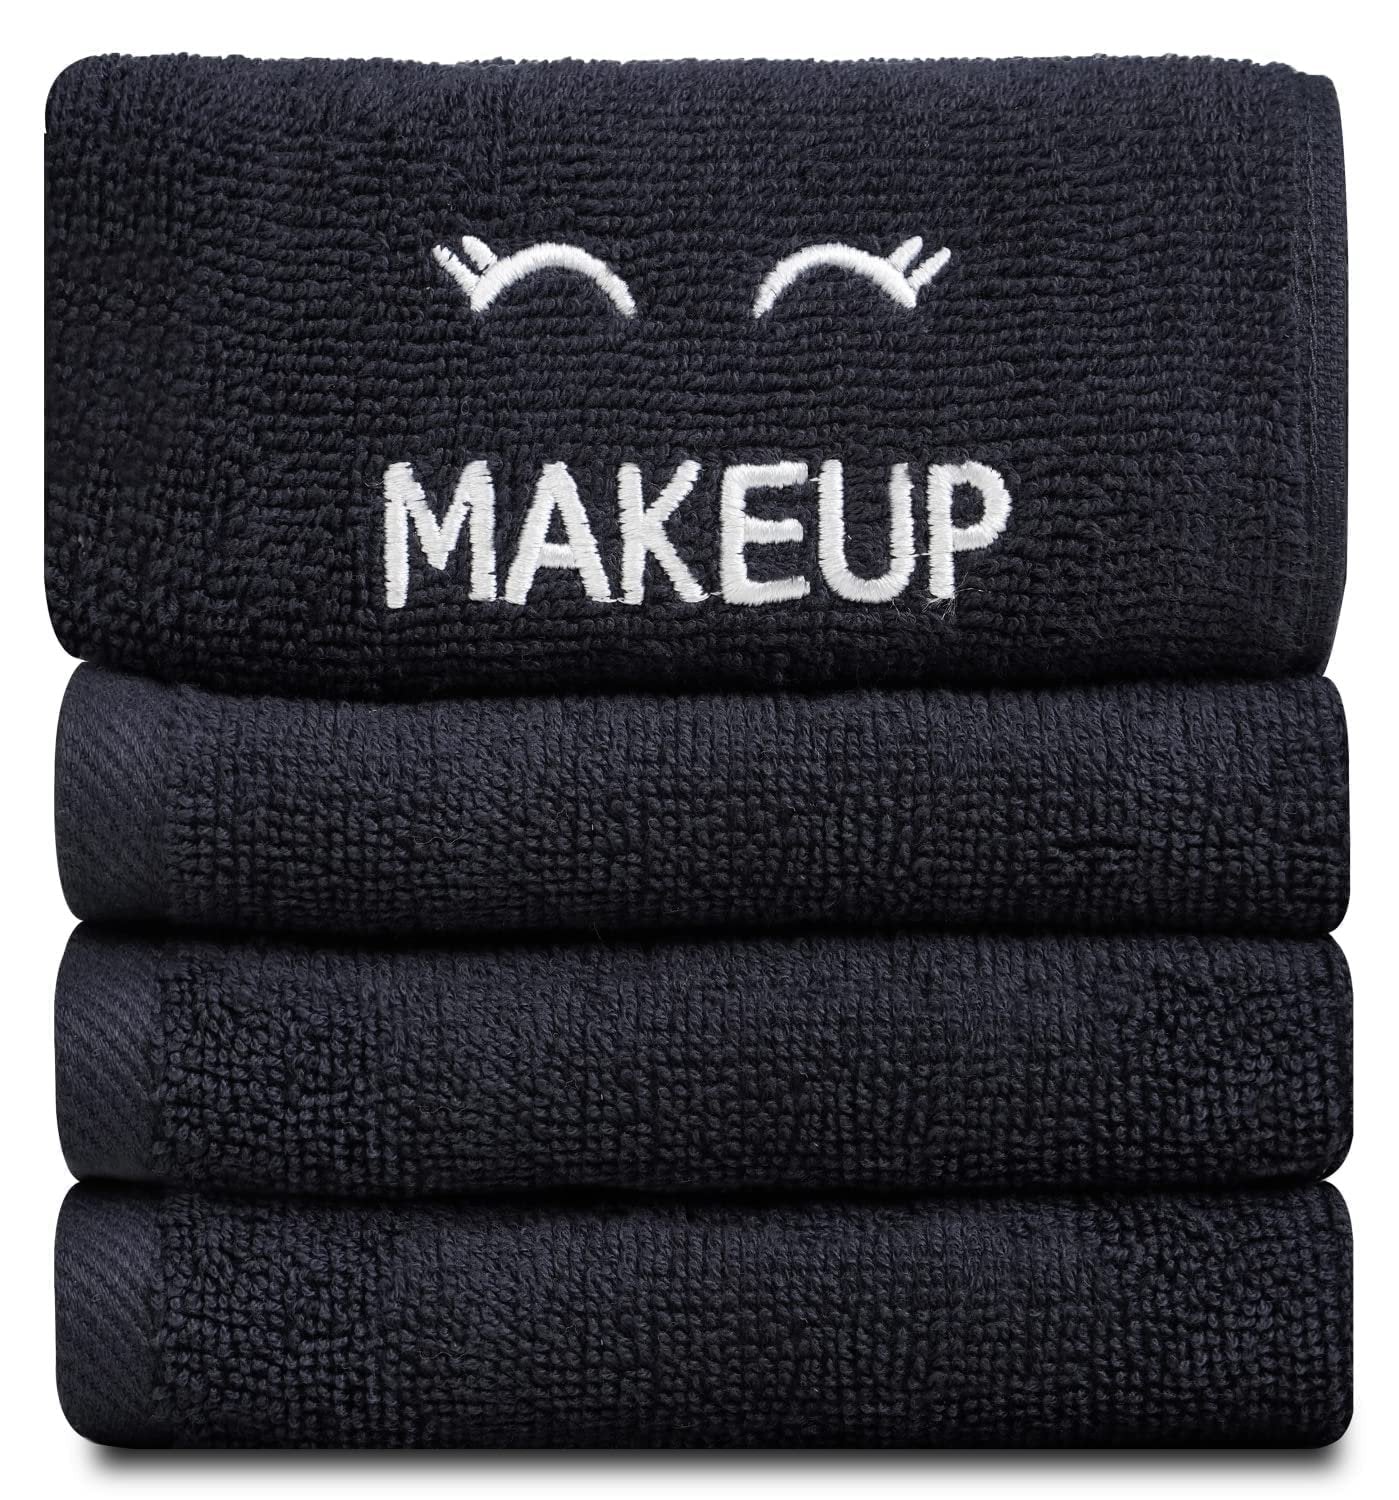 6 Pack Bleach Safe Black Makeup Towels | Soft Cotton Washcloths for Make up Removal